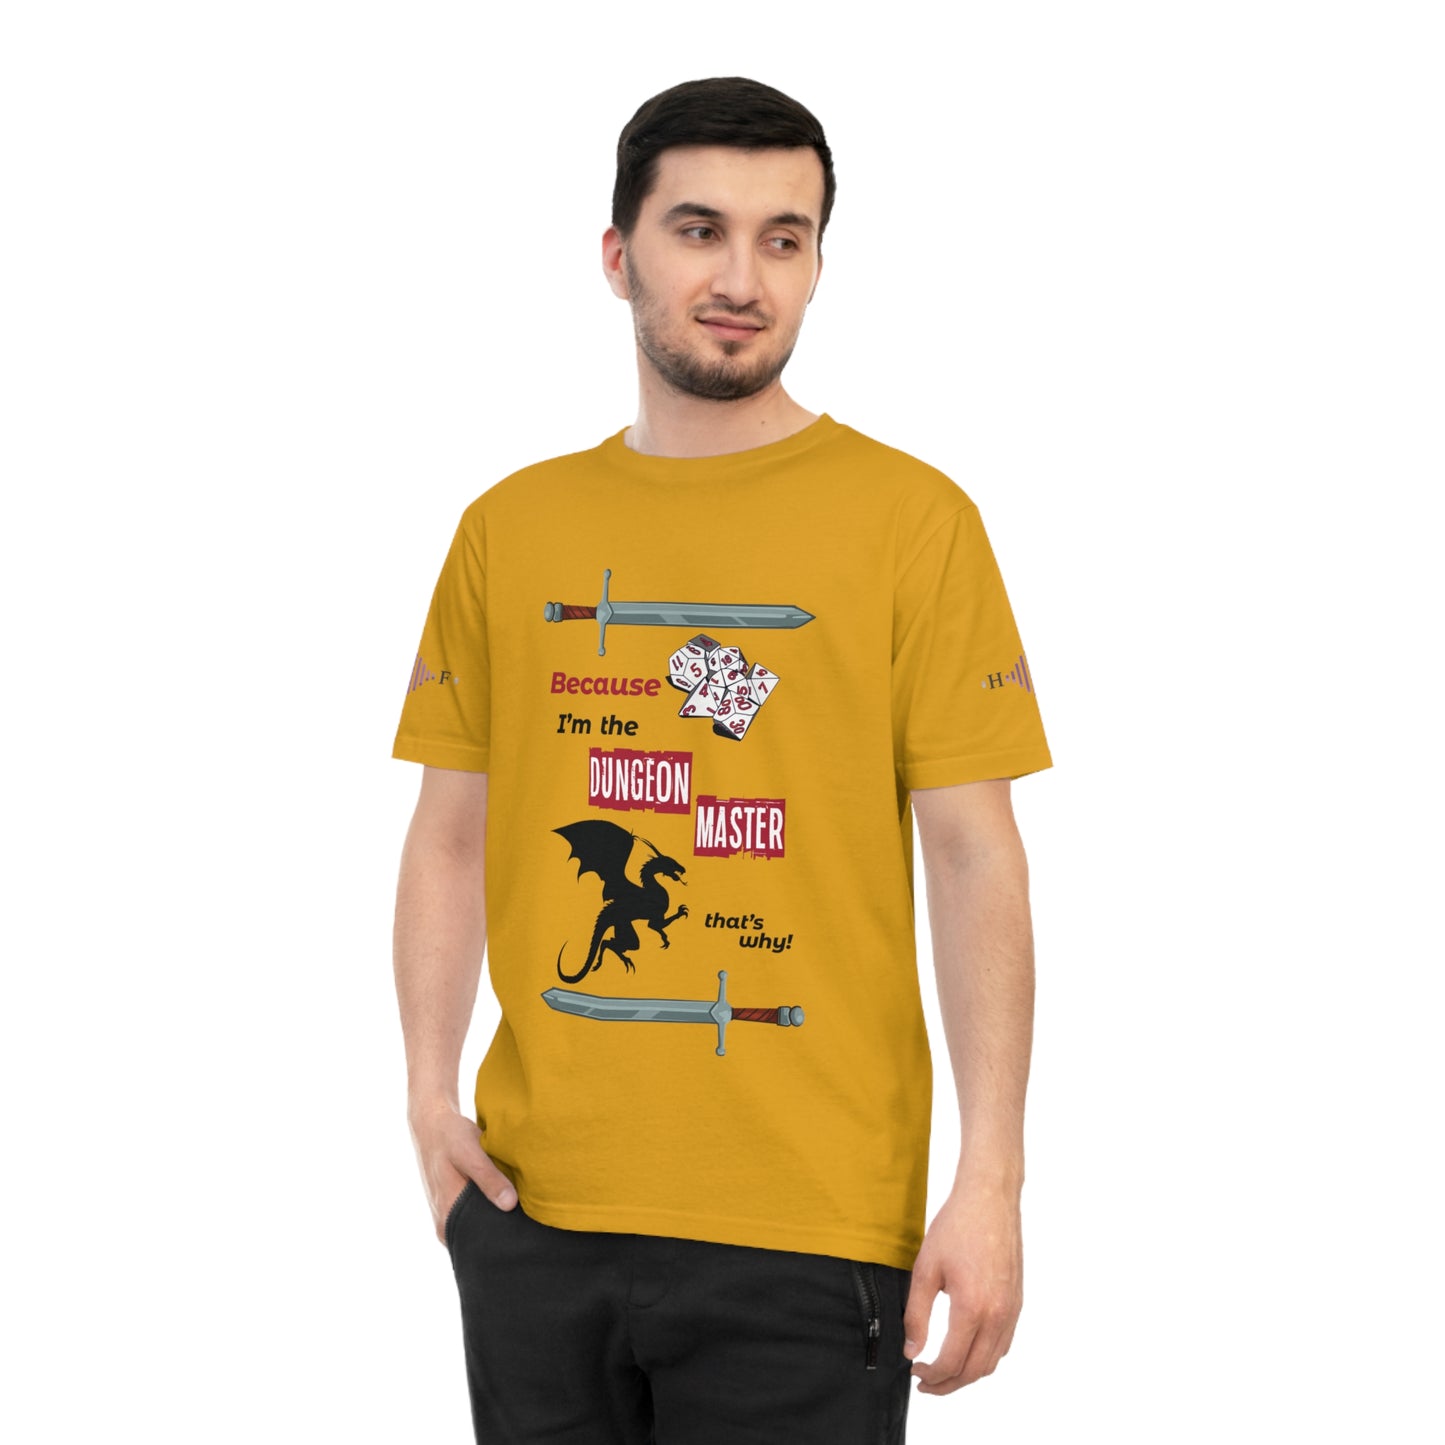 DM knows best! - Unisex Classic Jersey T-shirt